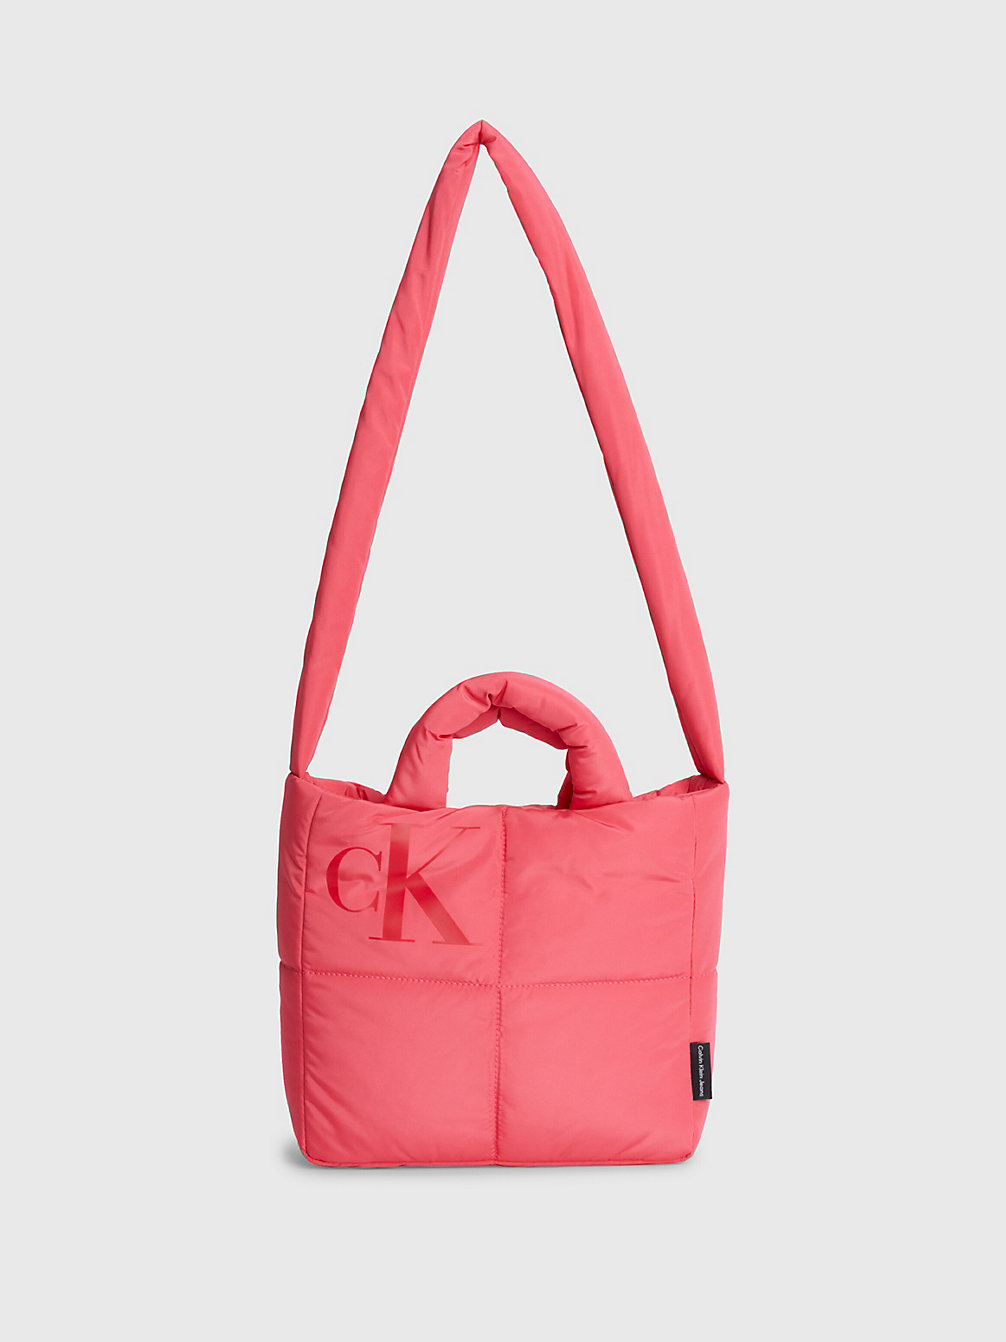 PINK FLASH > Crossbody Bag Mit Gestepptem Design Für Kinder > undefined kids unisex - Calvin Klein